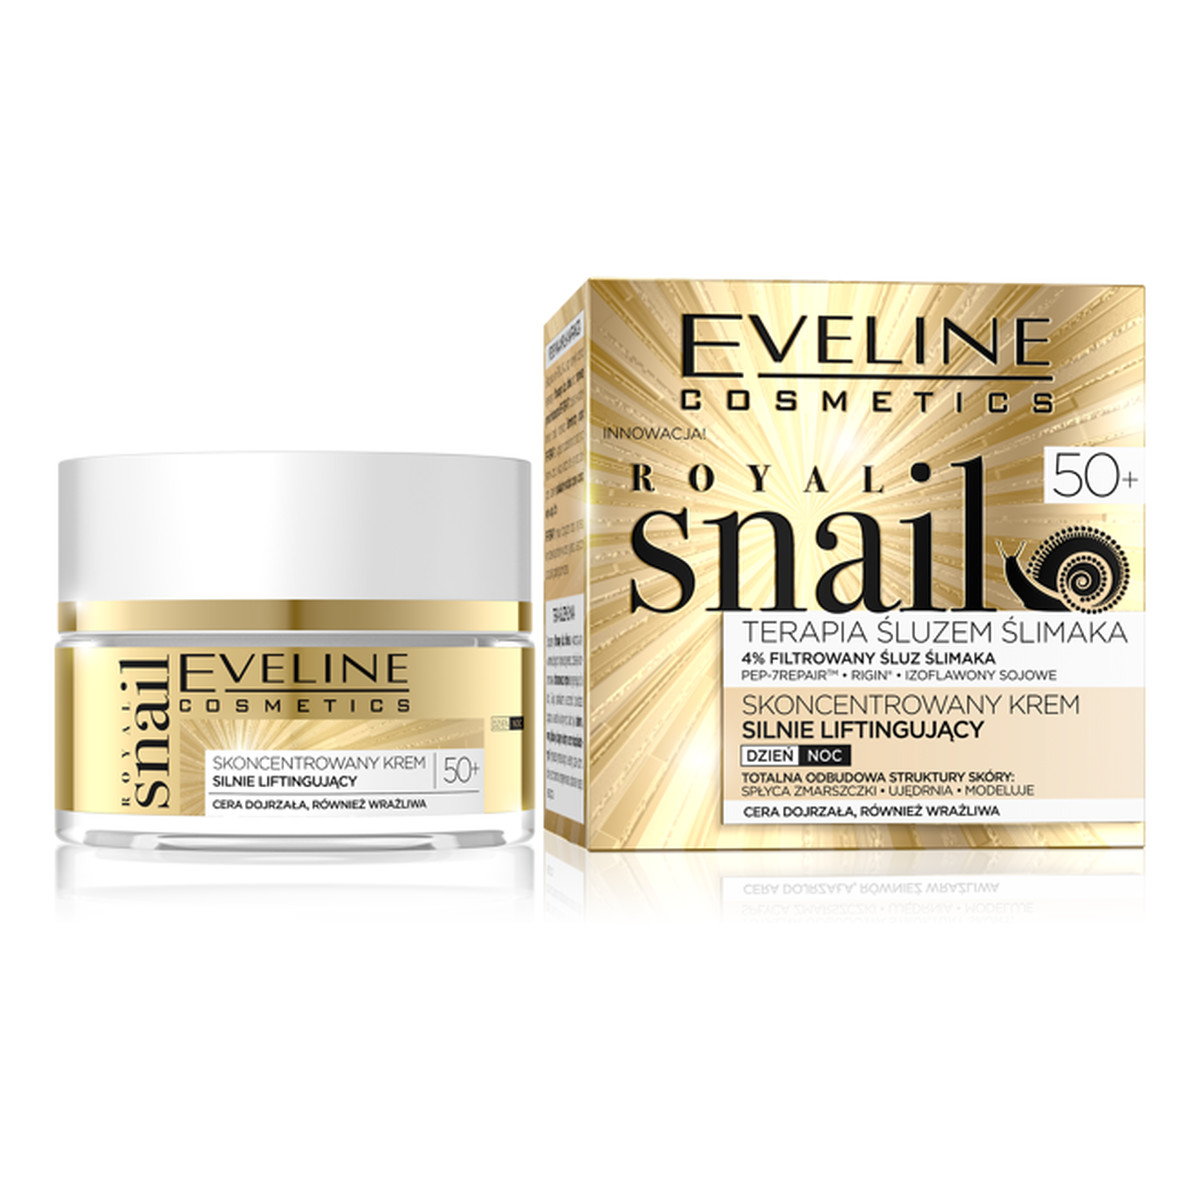 Eveline Royal Snail skoncentrowany krem silnie liftingujący 50+ na dzień i na noc 50ml